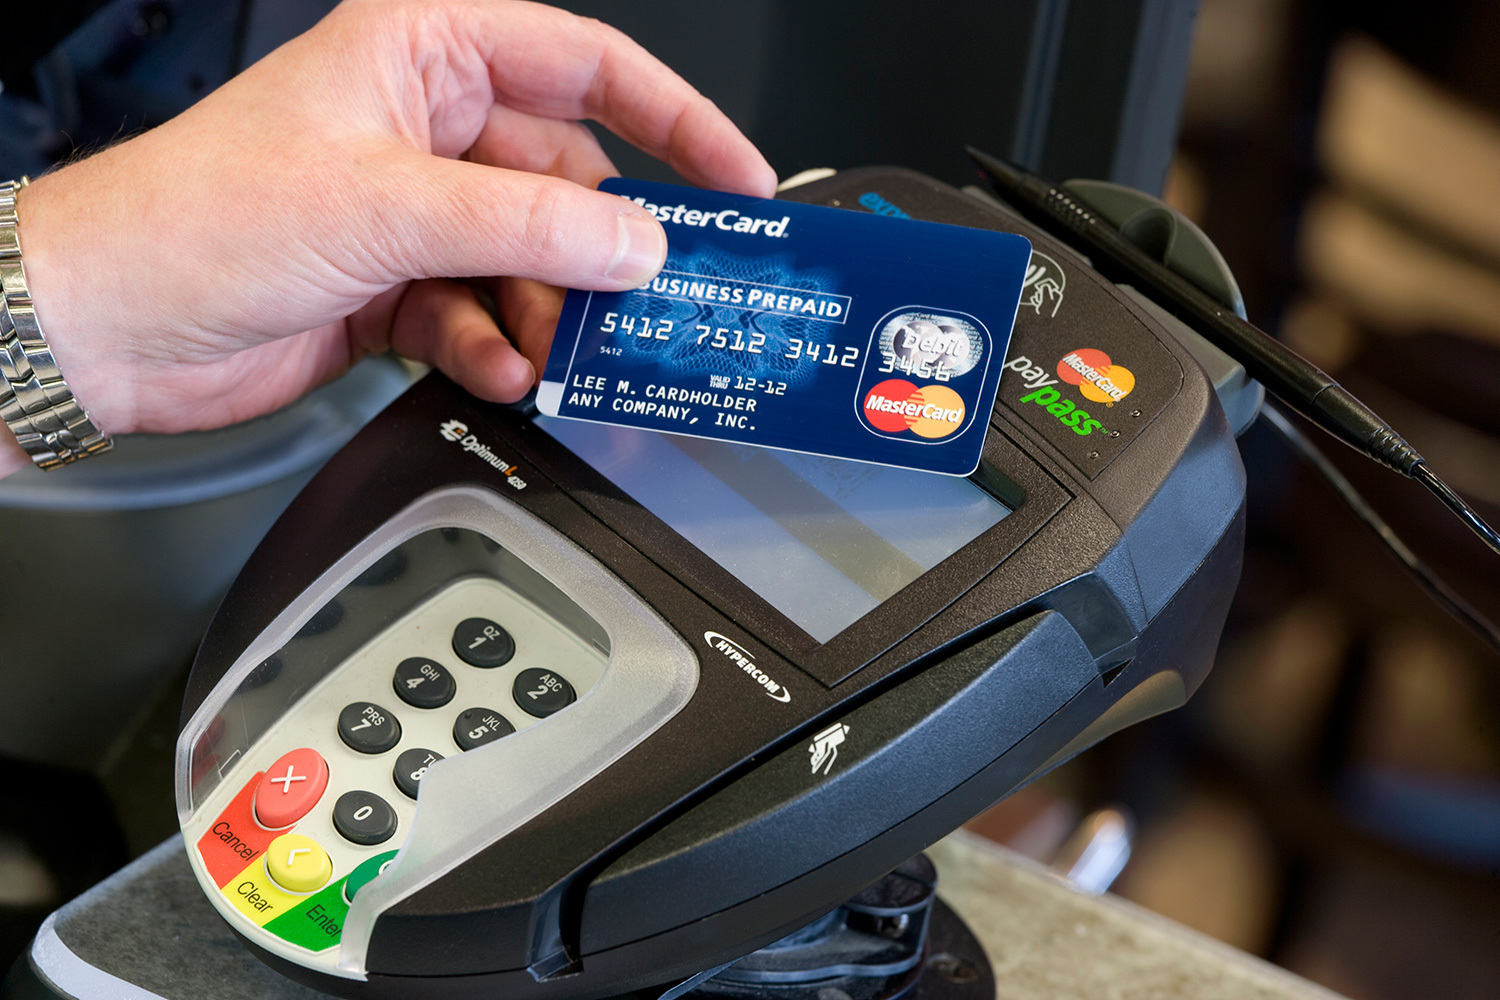 ما هو أفضل اتصال بطاقة sberbank أو لا تملك. مراحل تطوير البطاقات المصرفية - من المغناطيس إلى رقاقة صغيرة. التهديدات الخفية والمستقبل